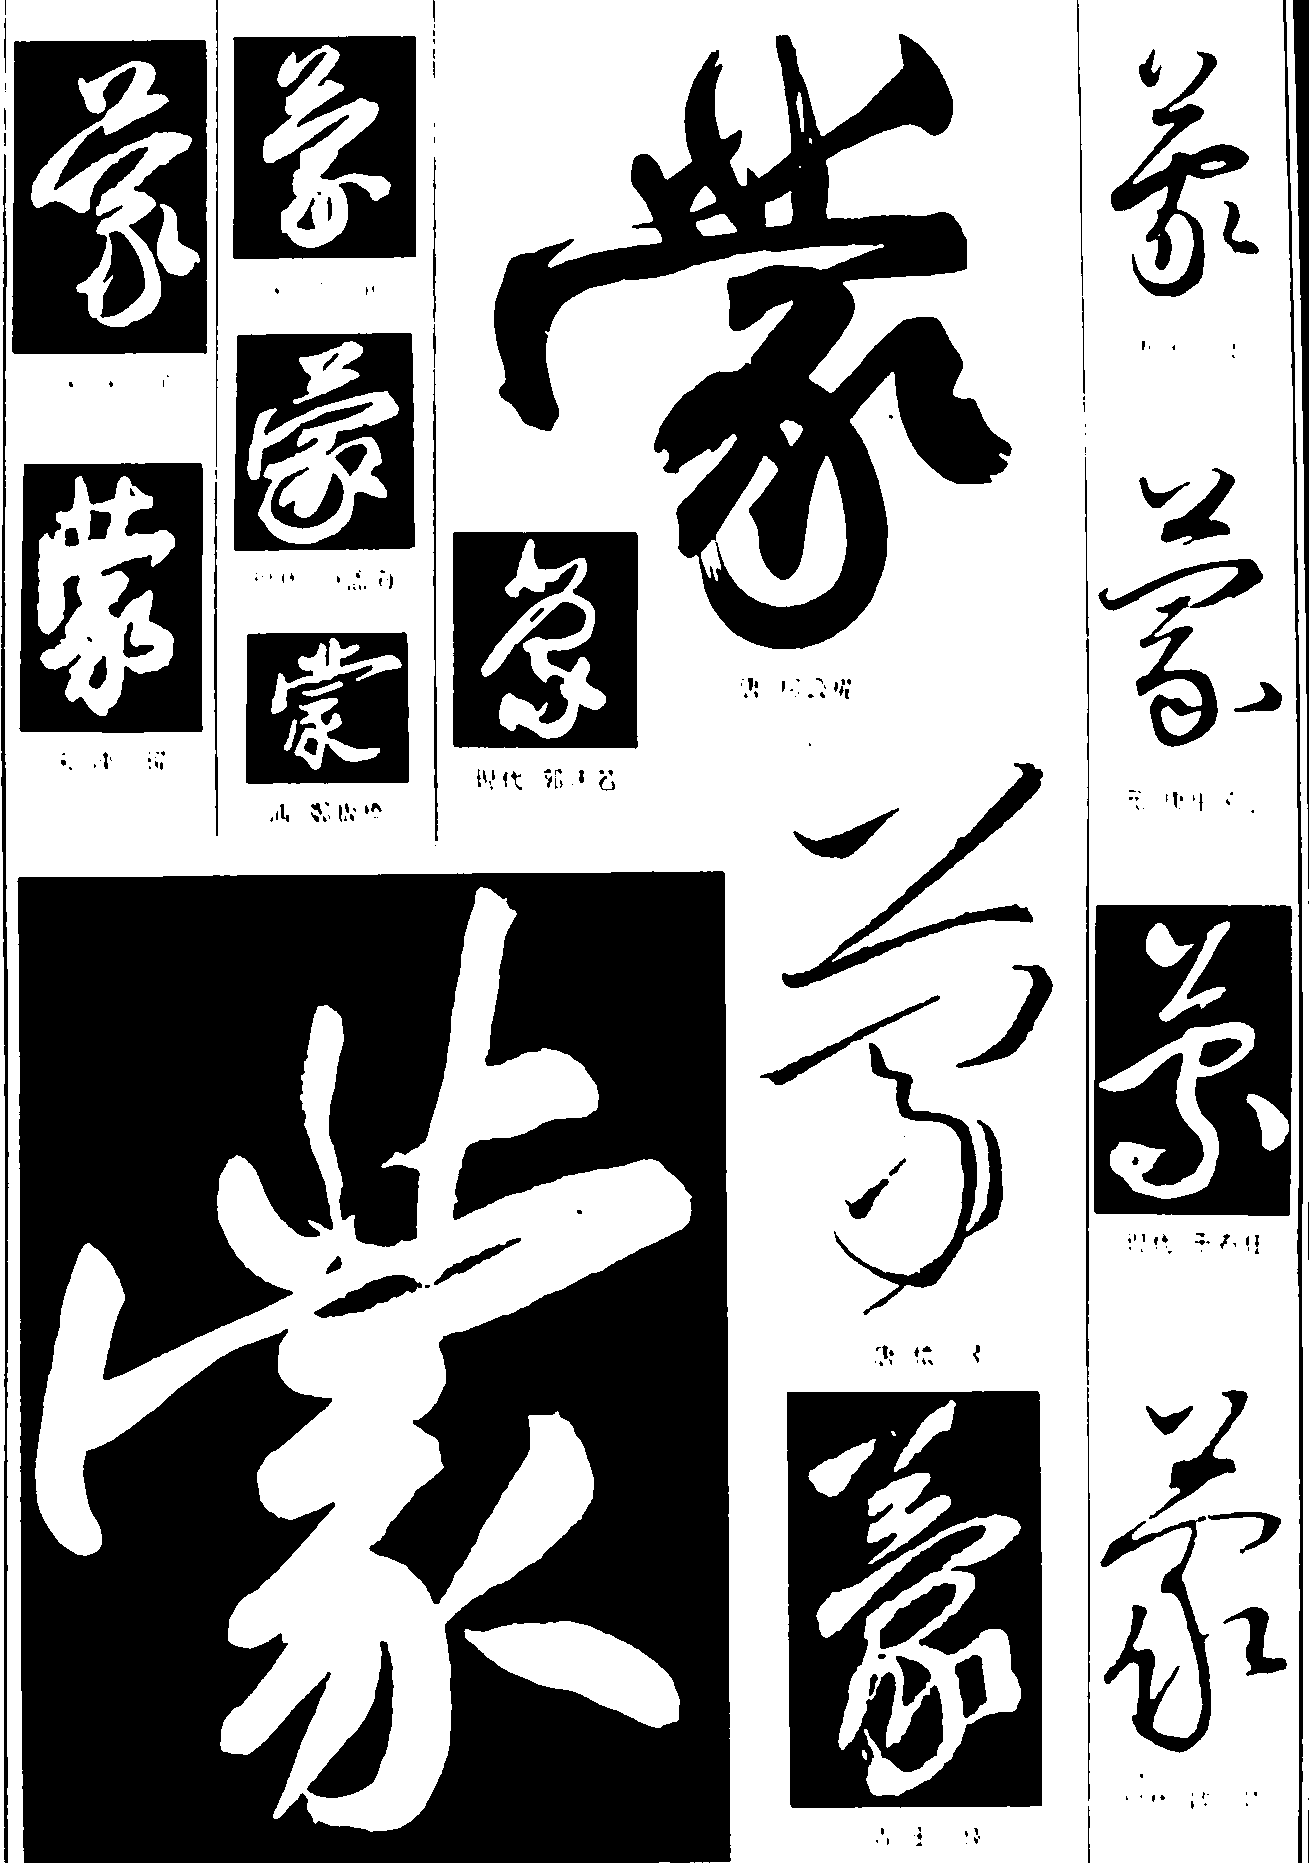 蒙 艺术字 毛笔字 书法字 繁体 标志设计